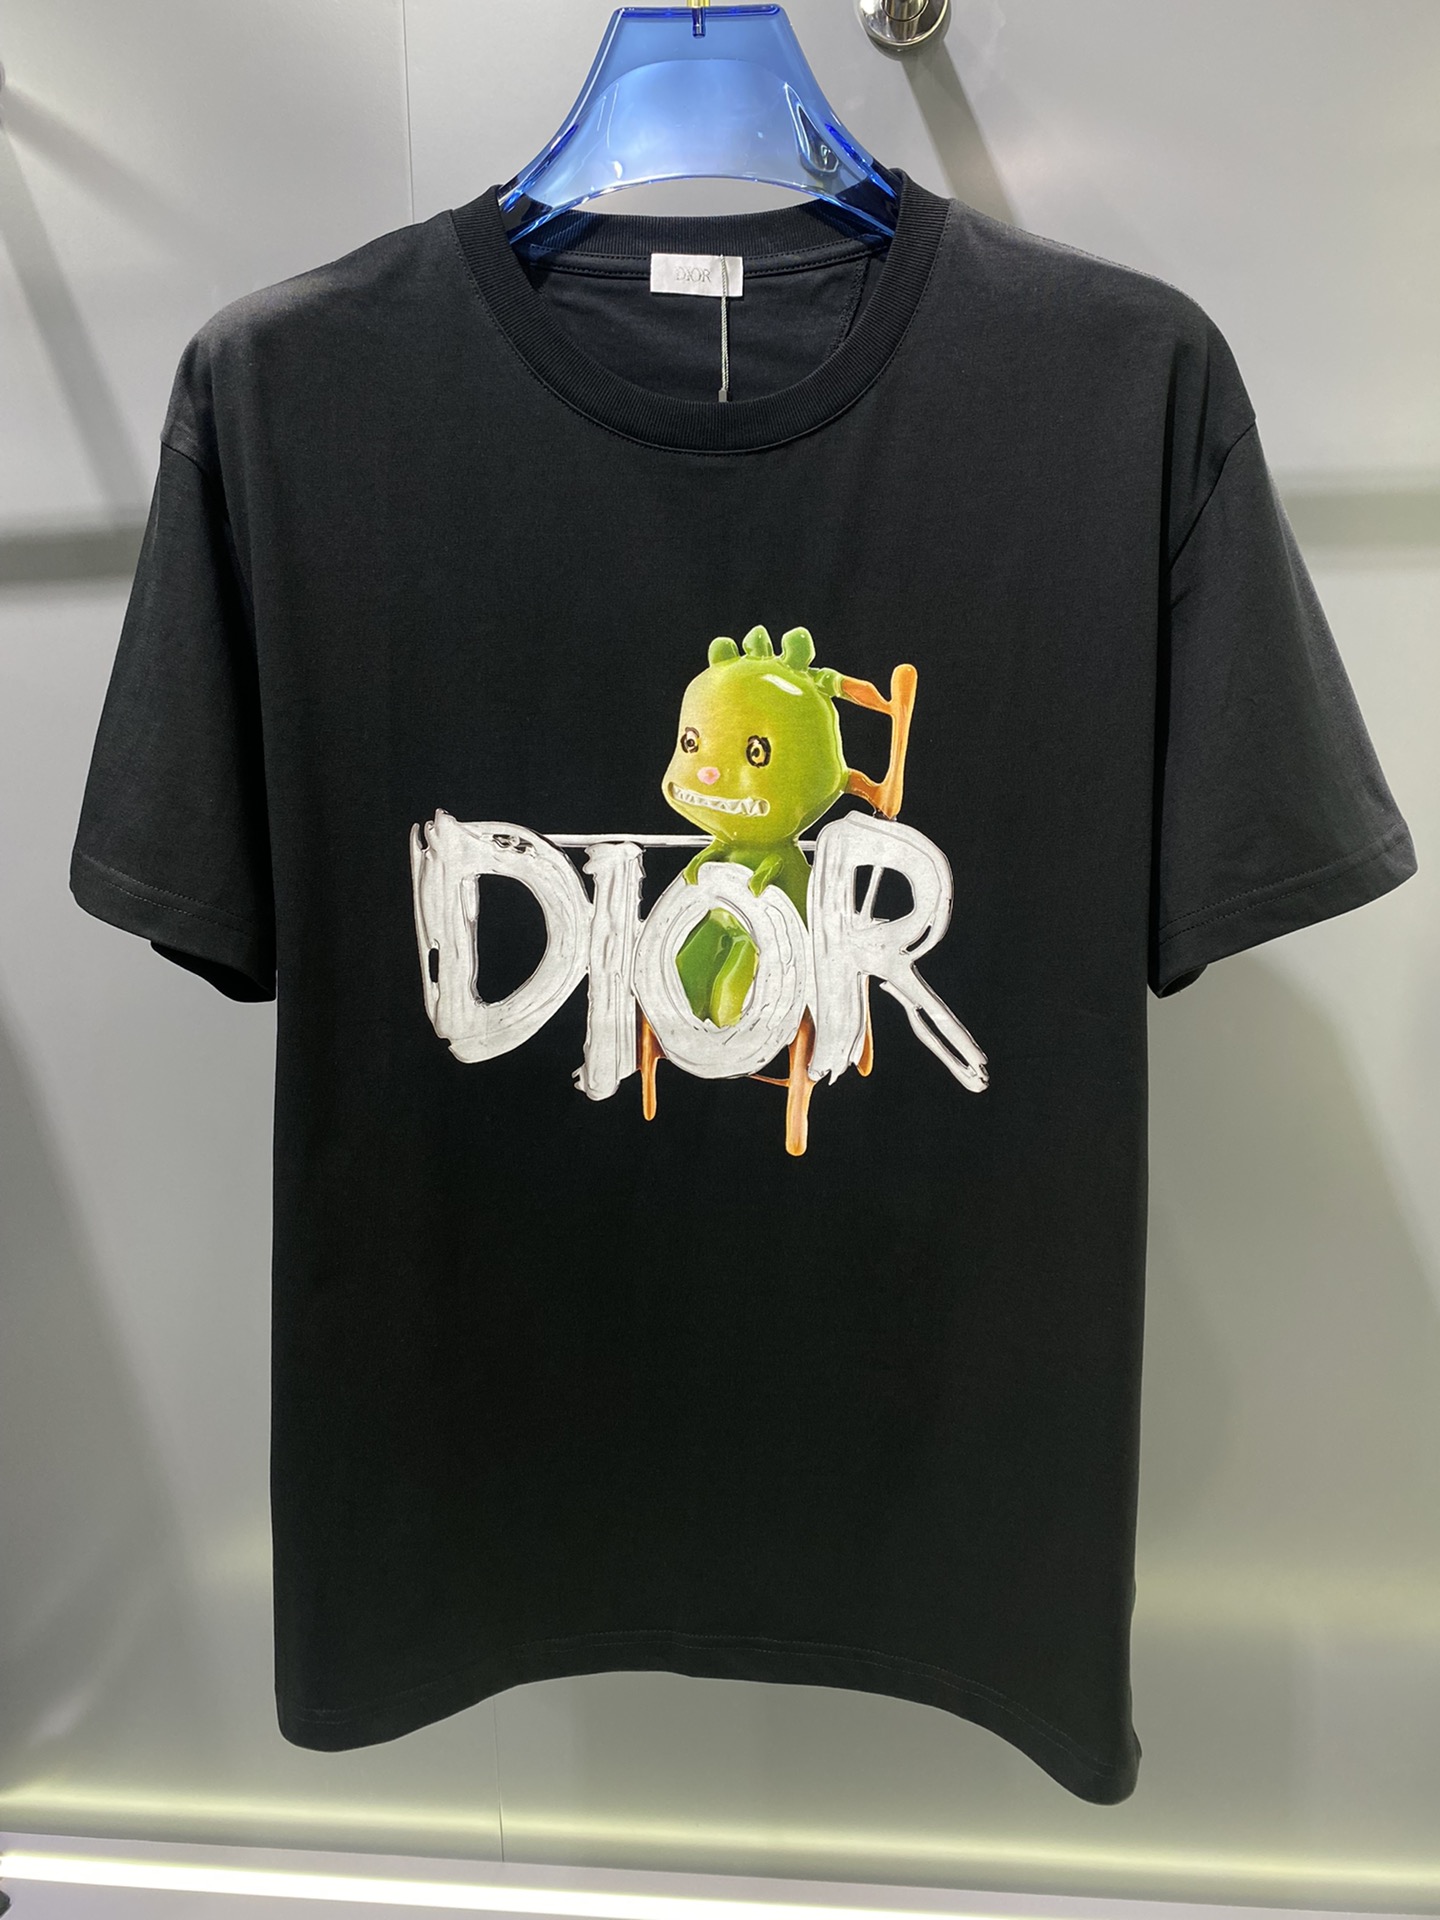 最新最顶级版本胸前Dior字母logo卡通精灵图案最顶级的品质专柜原单短袖顶级制作工艺进口面料专柜款独特